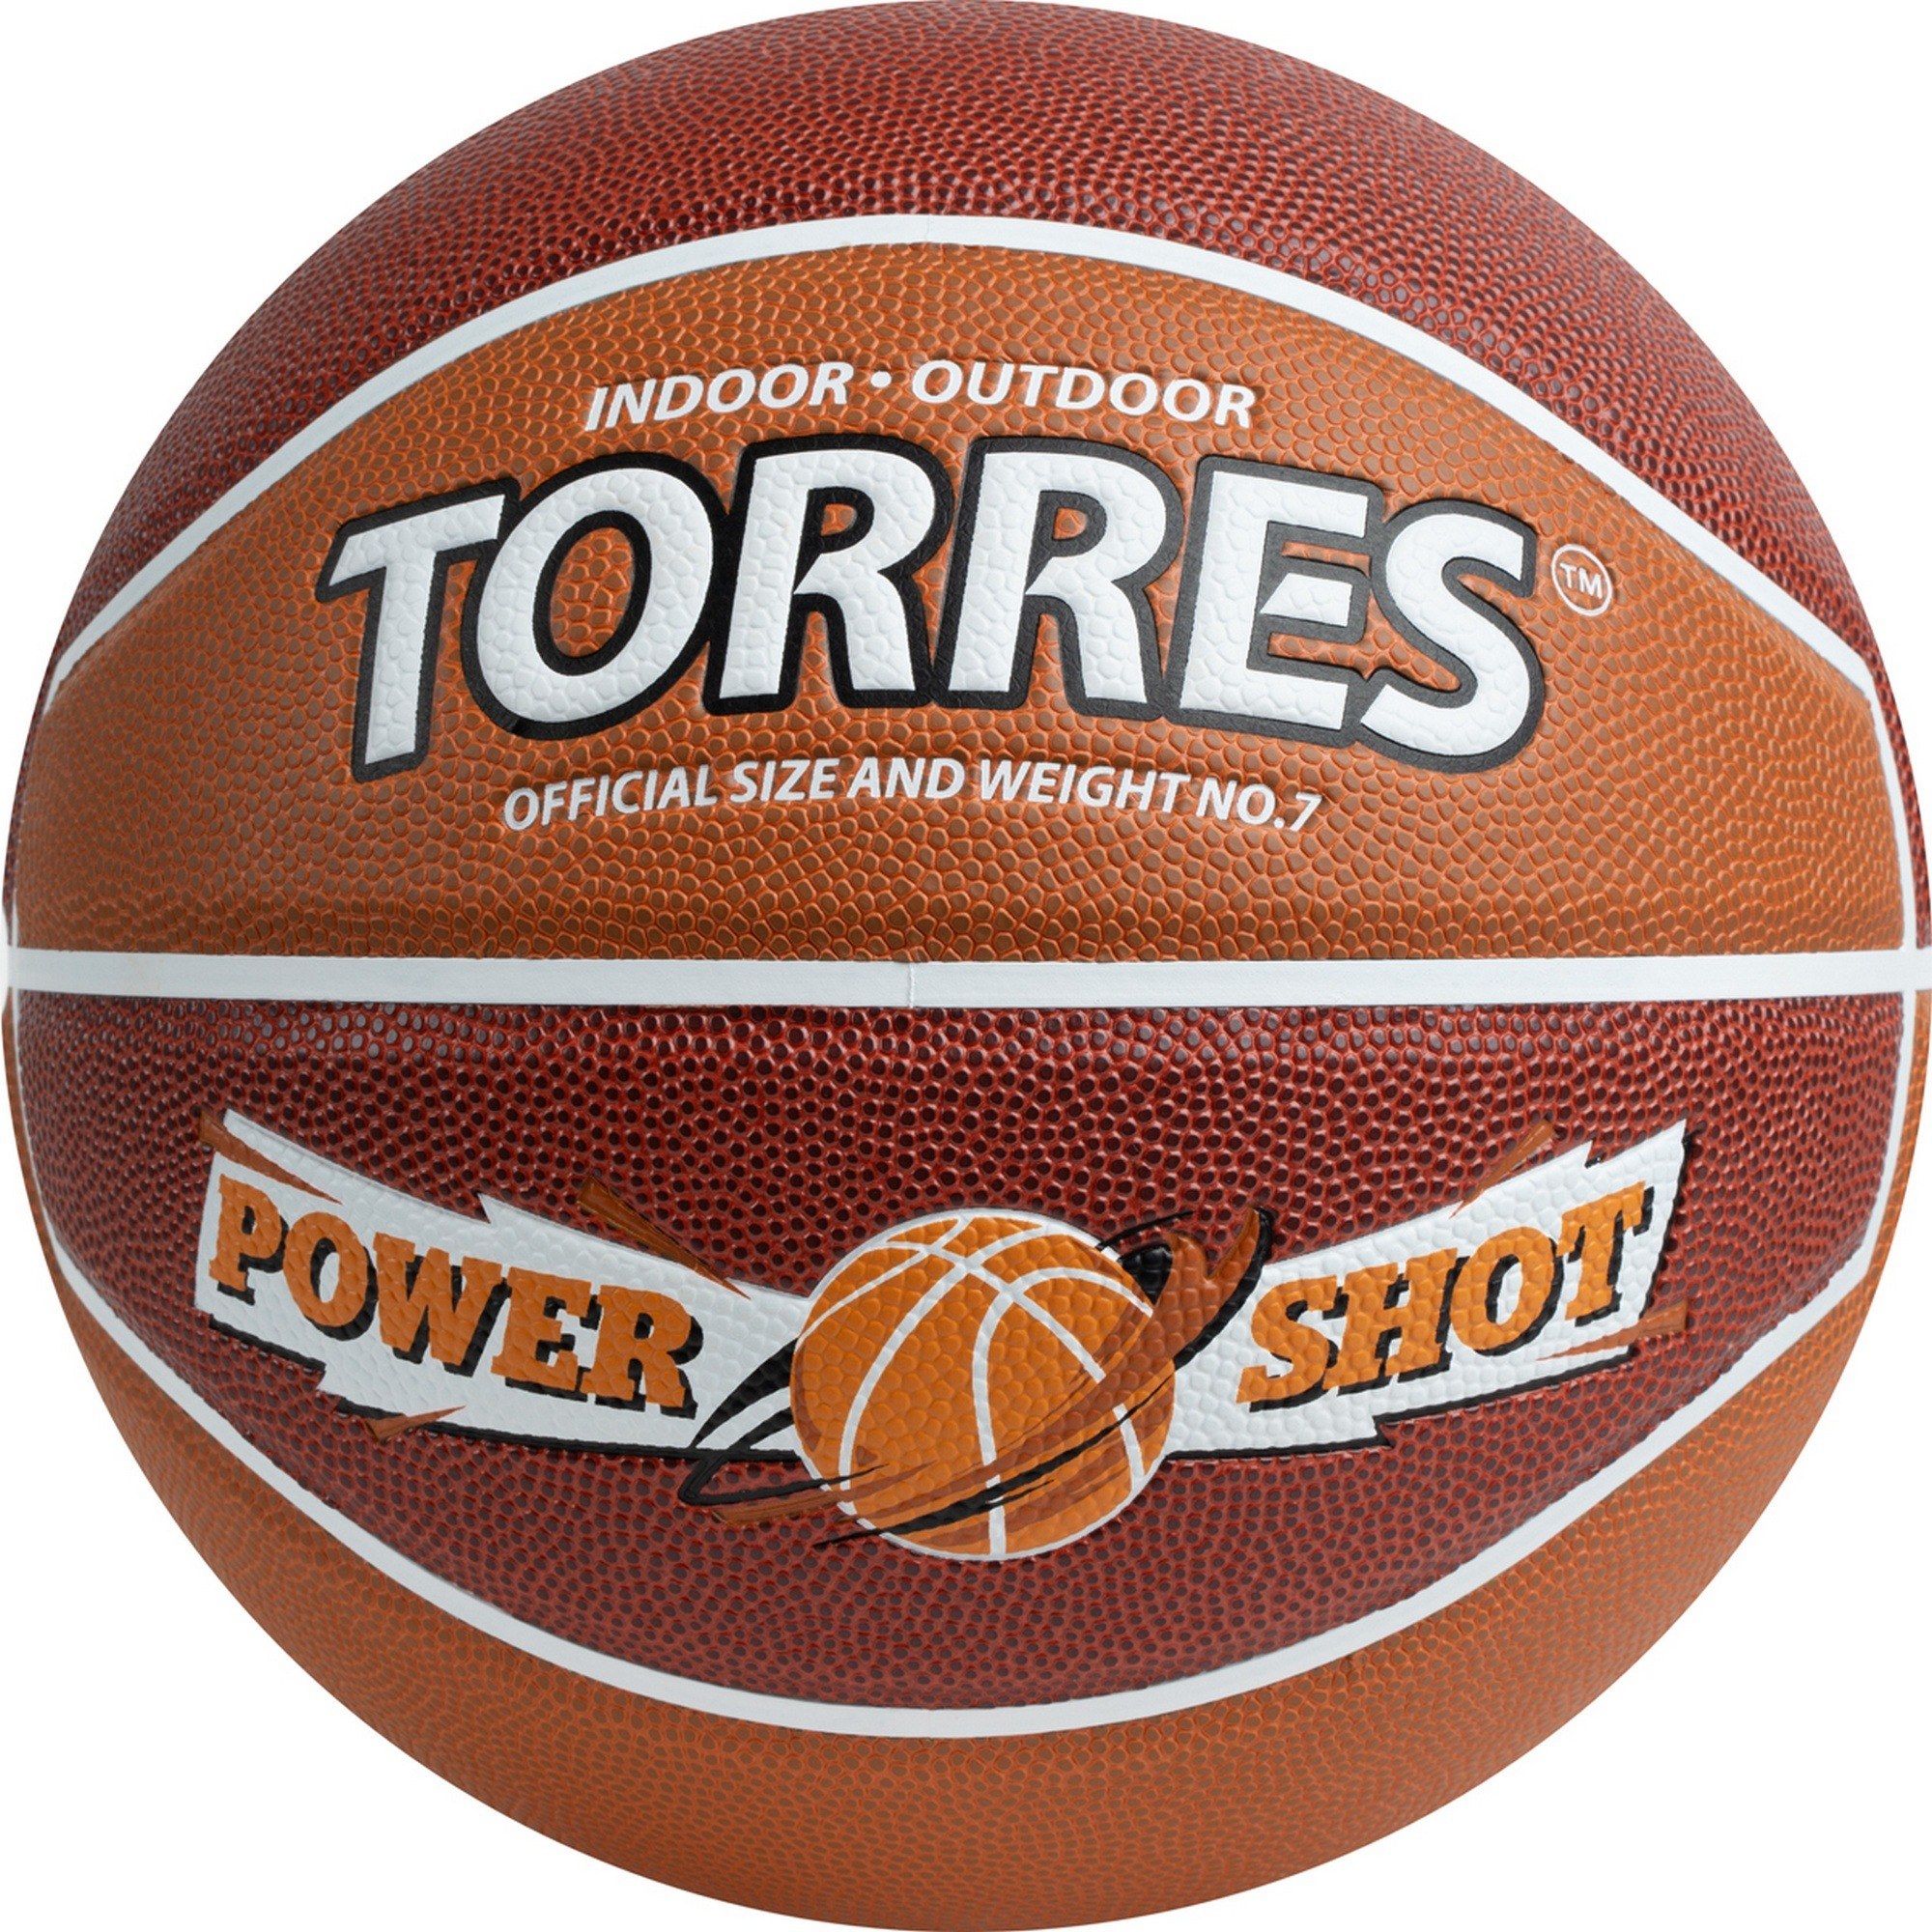   Torres Power Shot B323187 .7